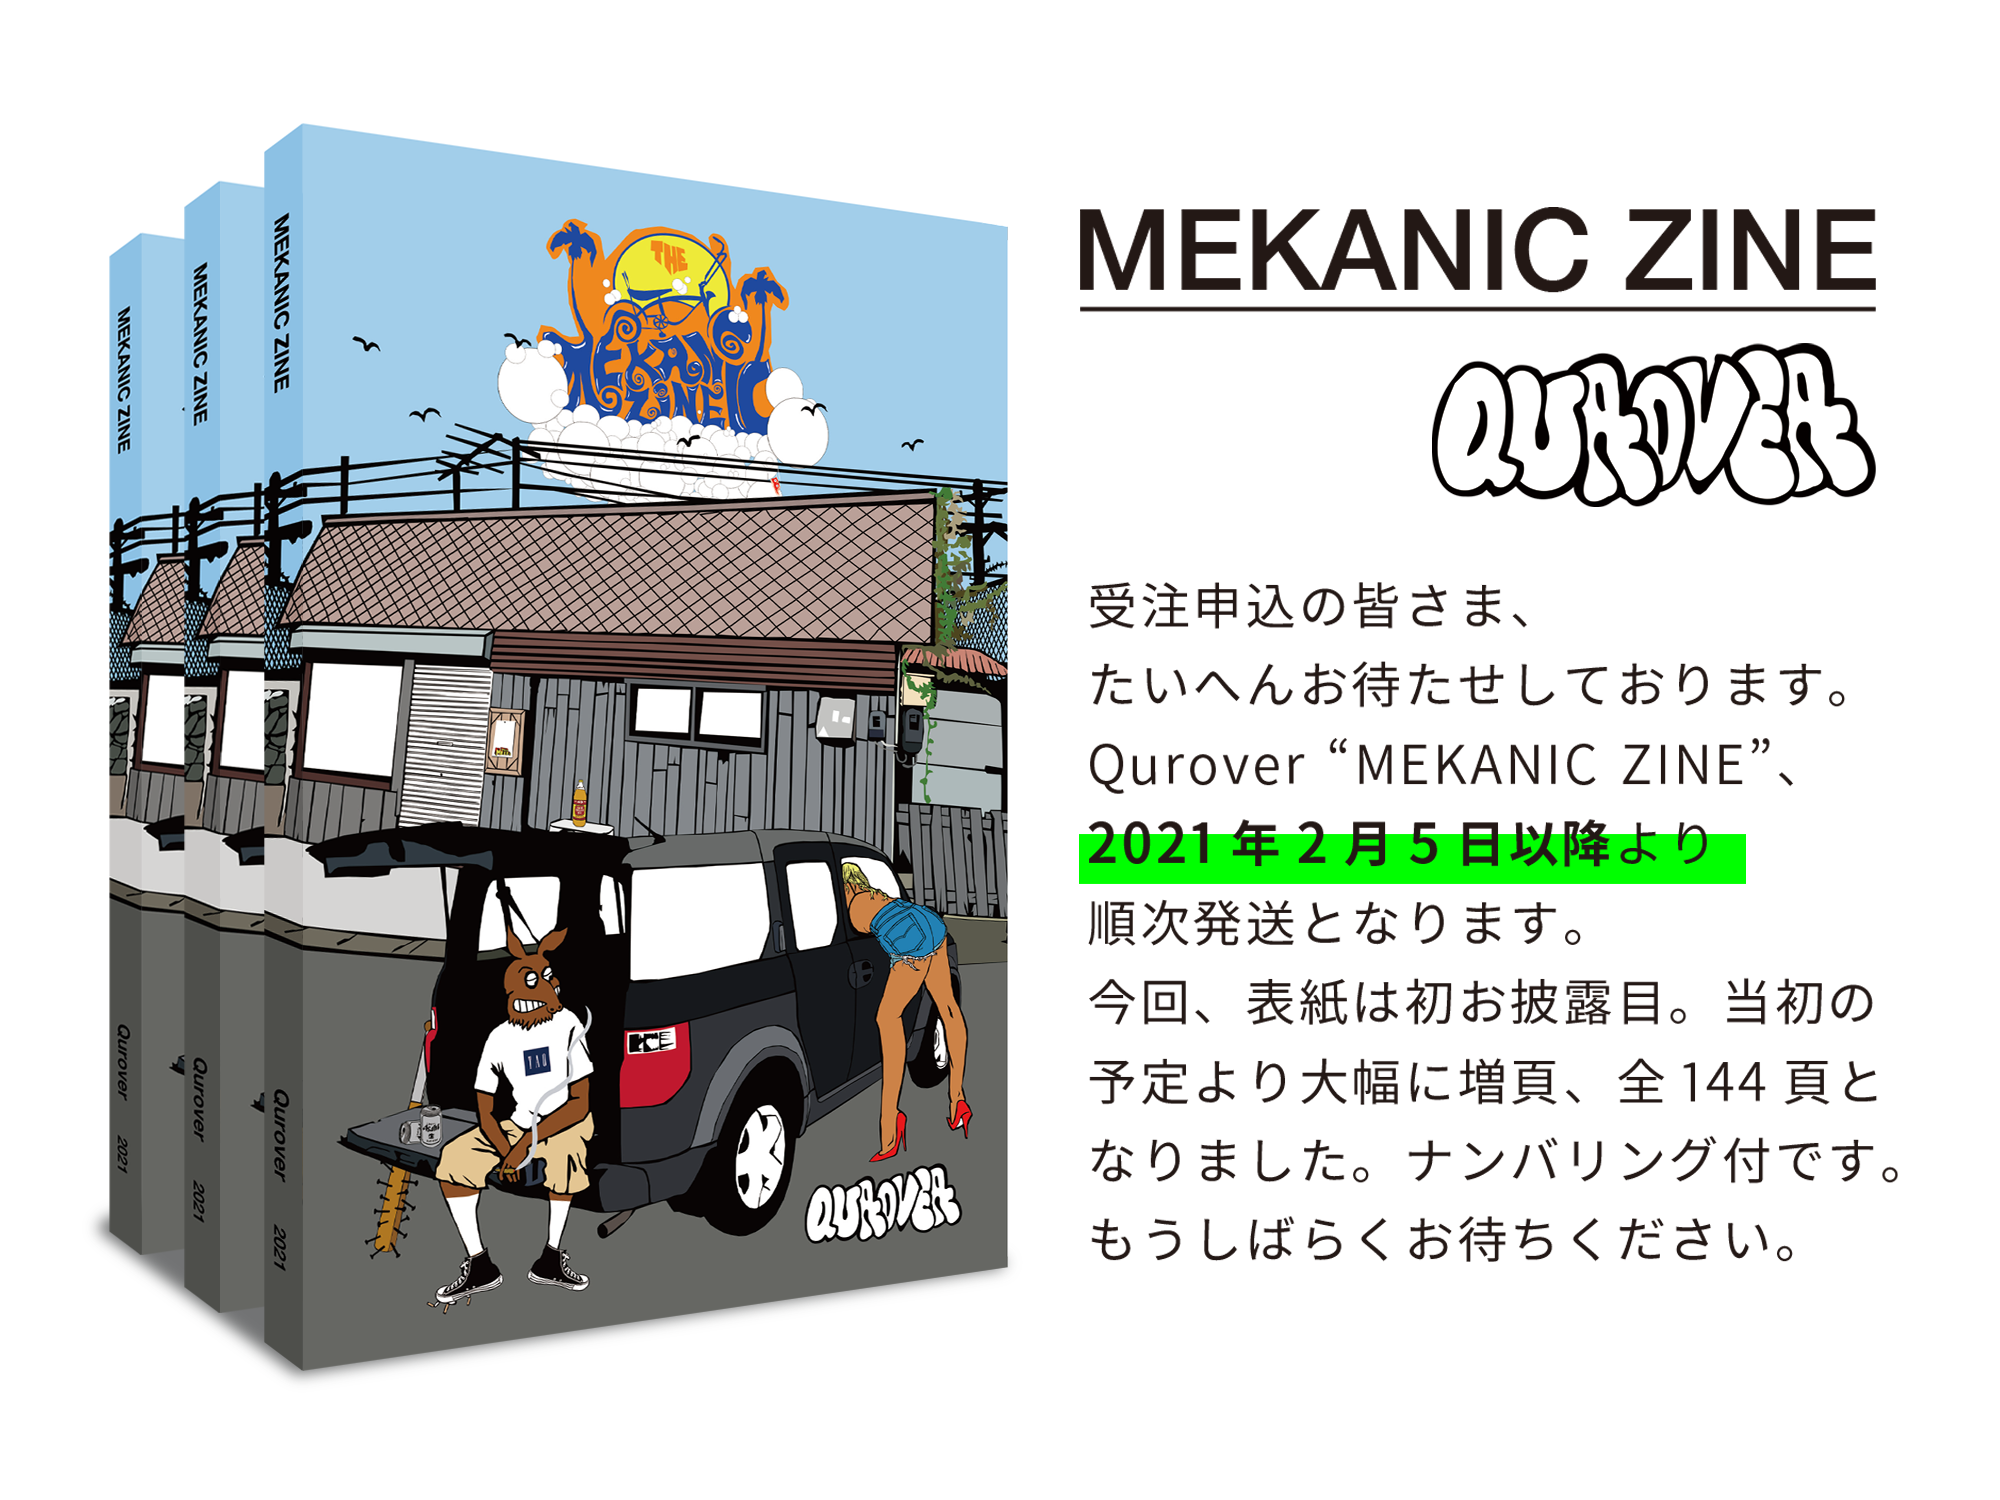 お待たせしております「MEKANIC ZINE／Qurover」、2月5日以降より順次発送となります。